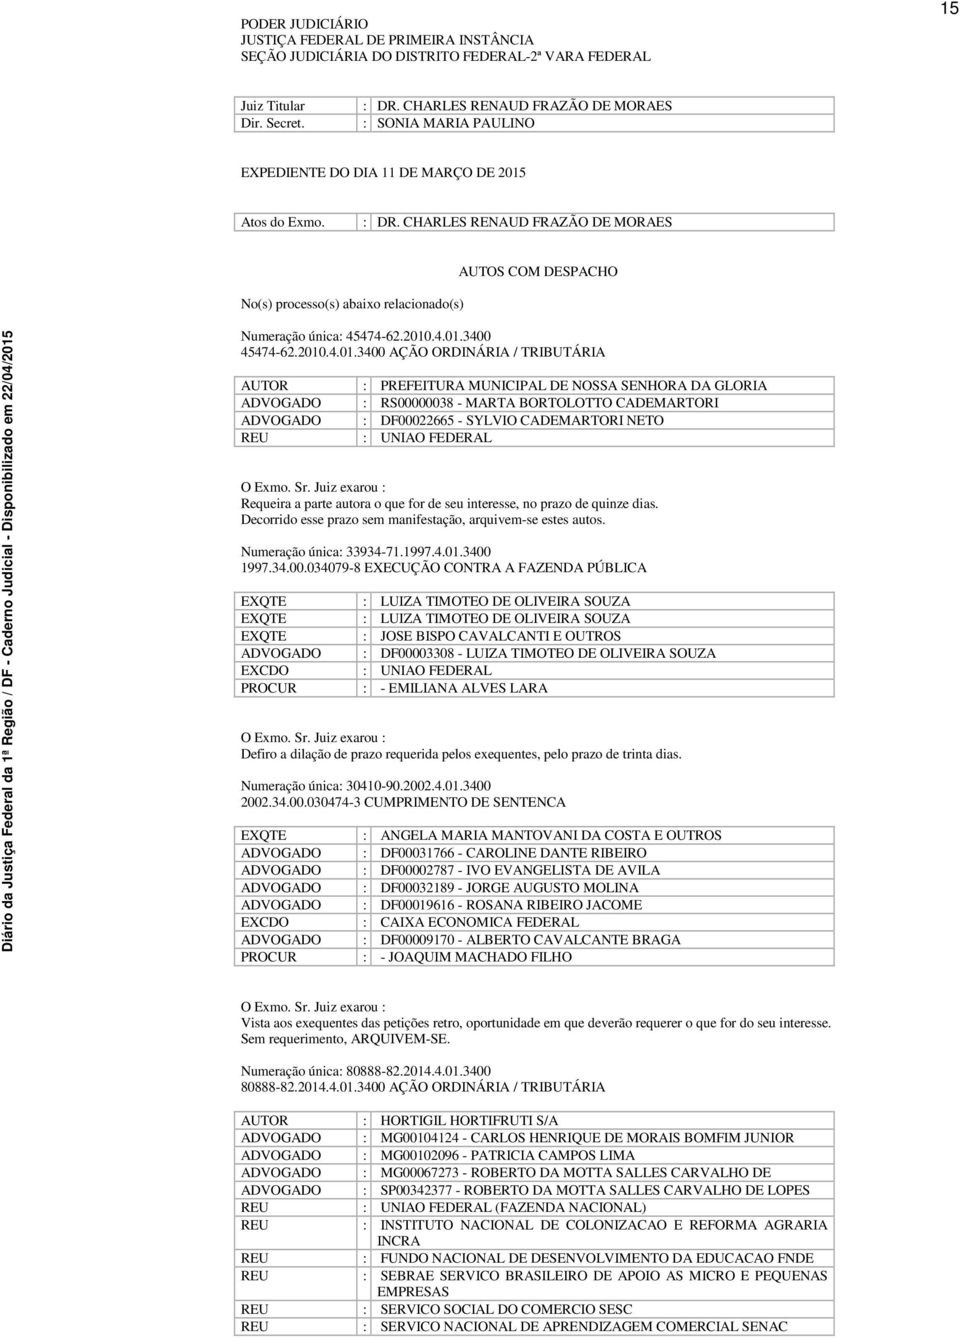 CHARLES RENAUD FRAZÃO DE MORAES No(s) processo(s) abaixo relacionado(s) AUTOS COM DESPACHO Numeração única: 45474-62.2010